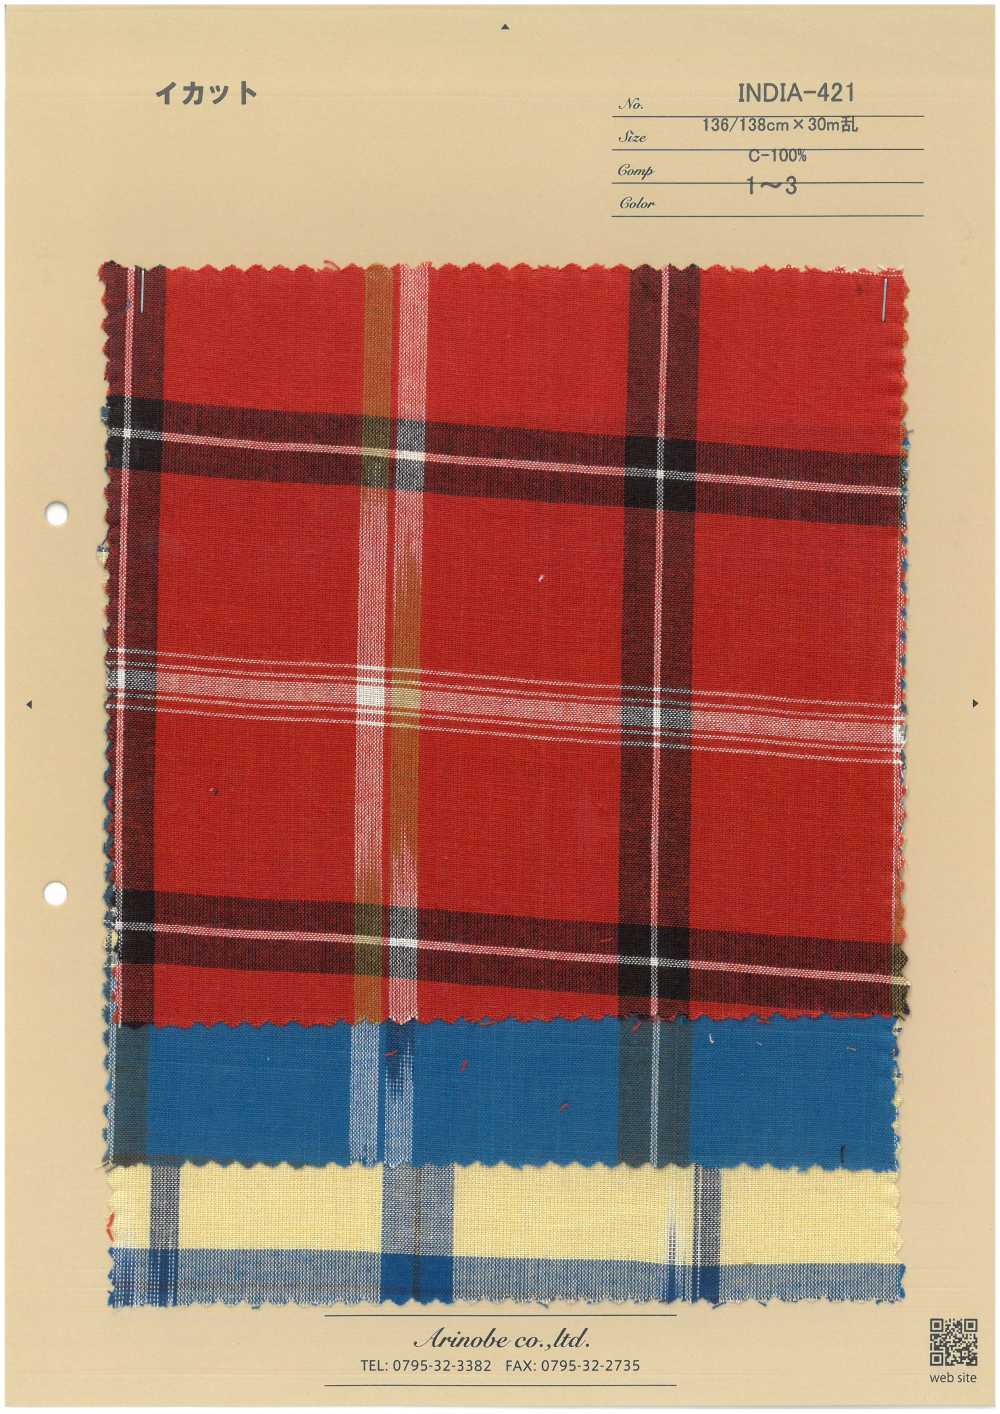 INDIA-421 Ikat[Fabrica Textil] ARINOBE CO., LTD.